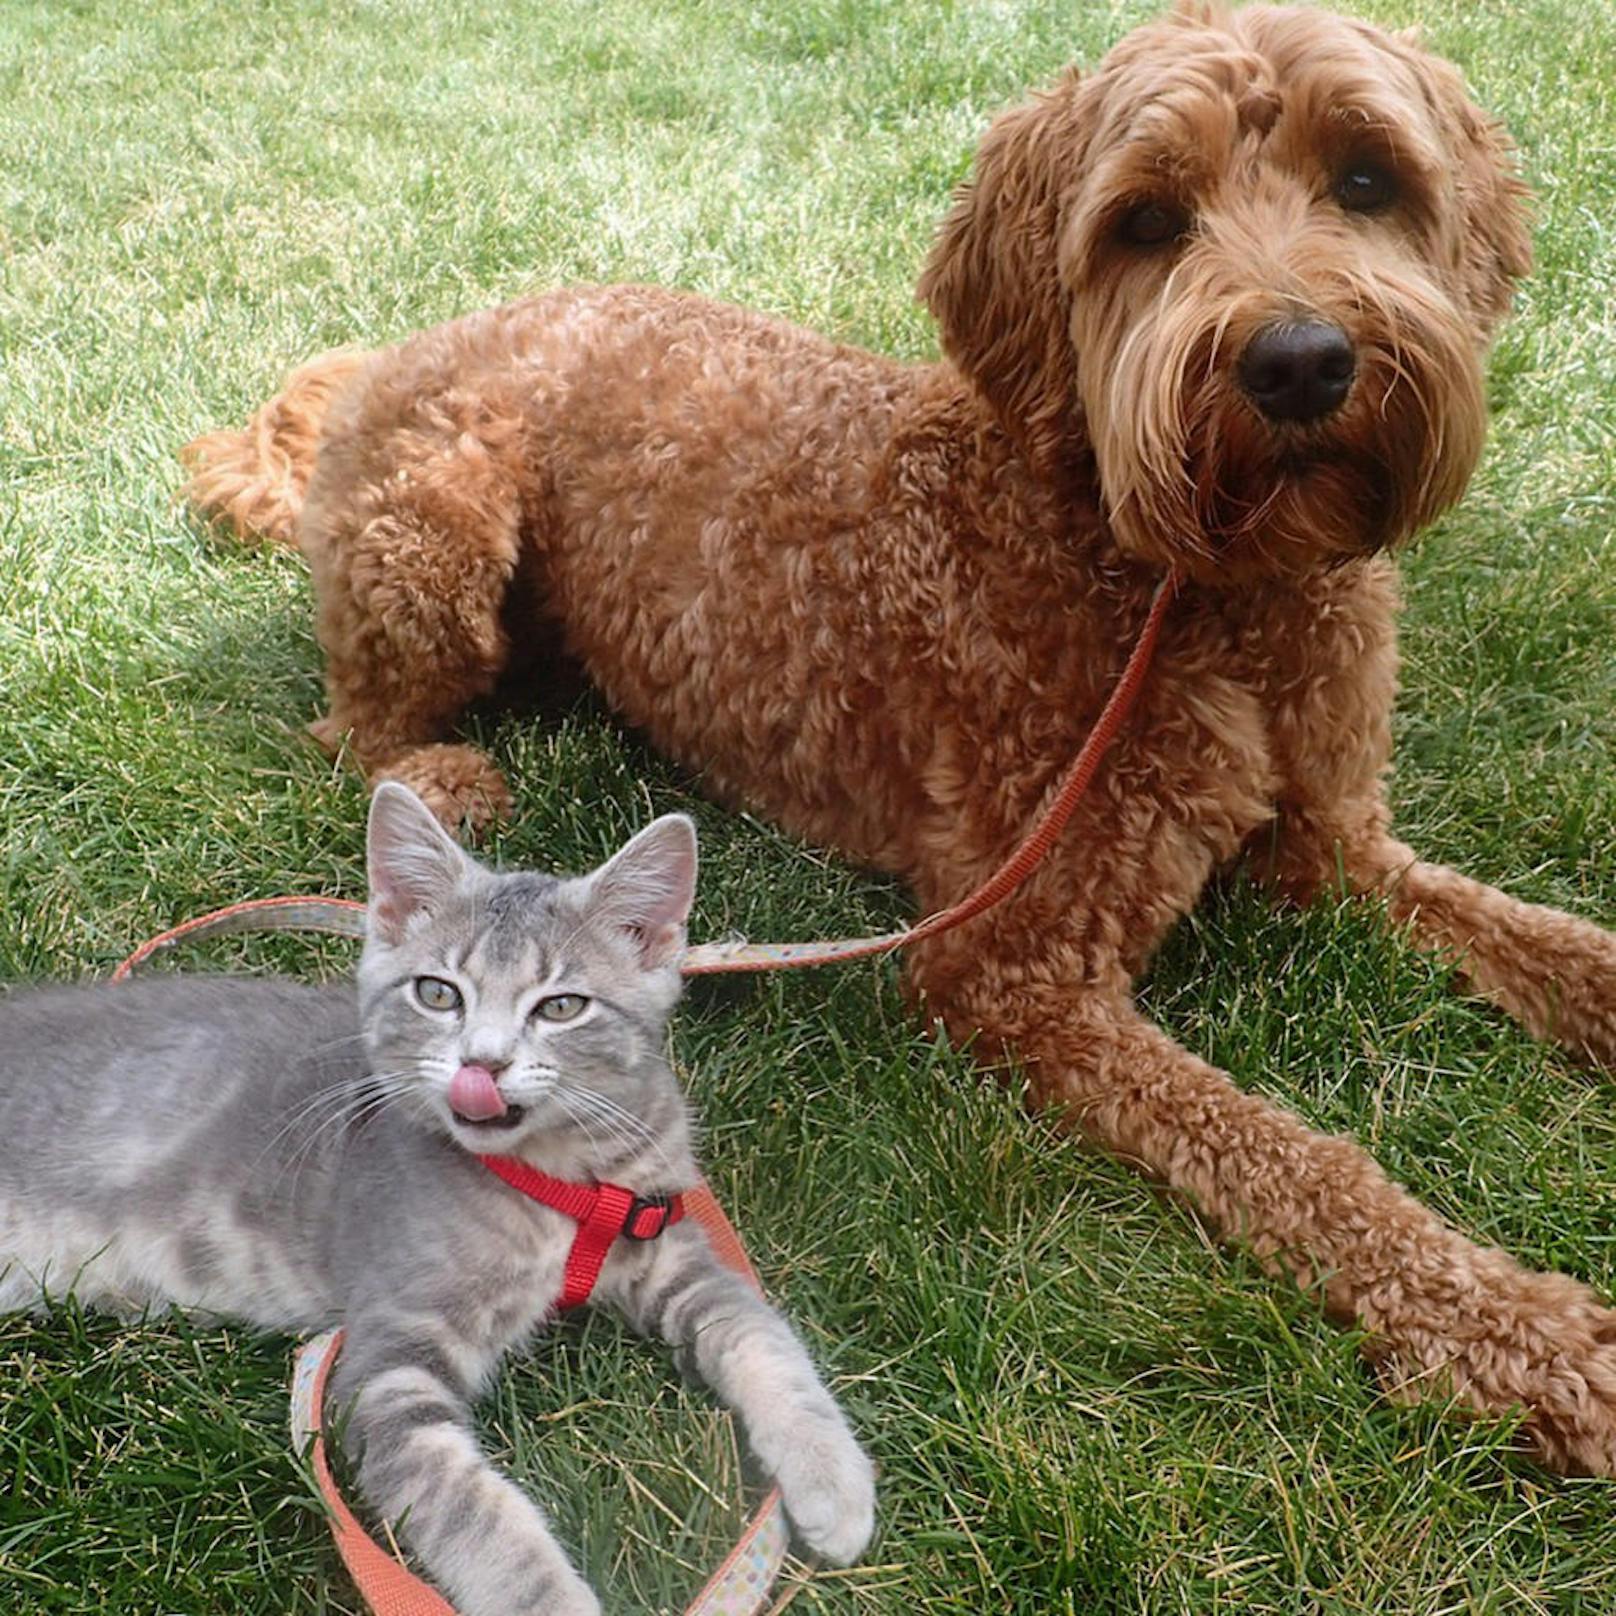 <b>Hund und Katze - ziemlich beste Freunde!</b> Koda, das Kätzchen, und Jessie, der Lapradoodle, lieben es, zusammen abzuhängen. Spotted in Kanada.